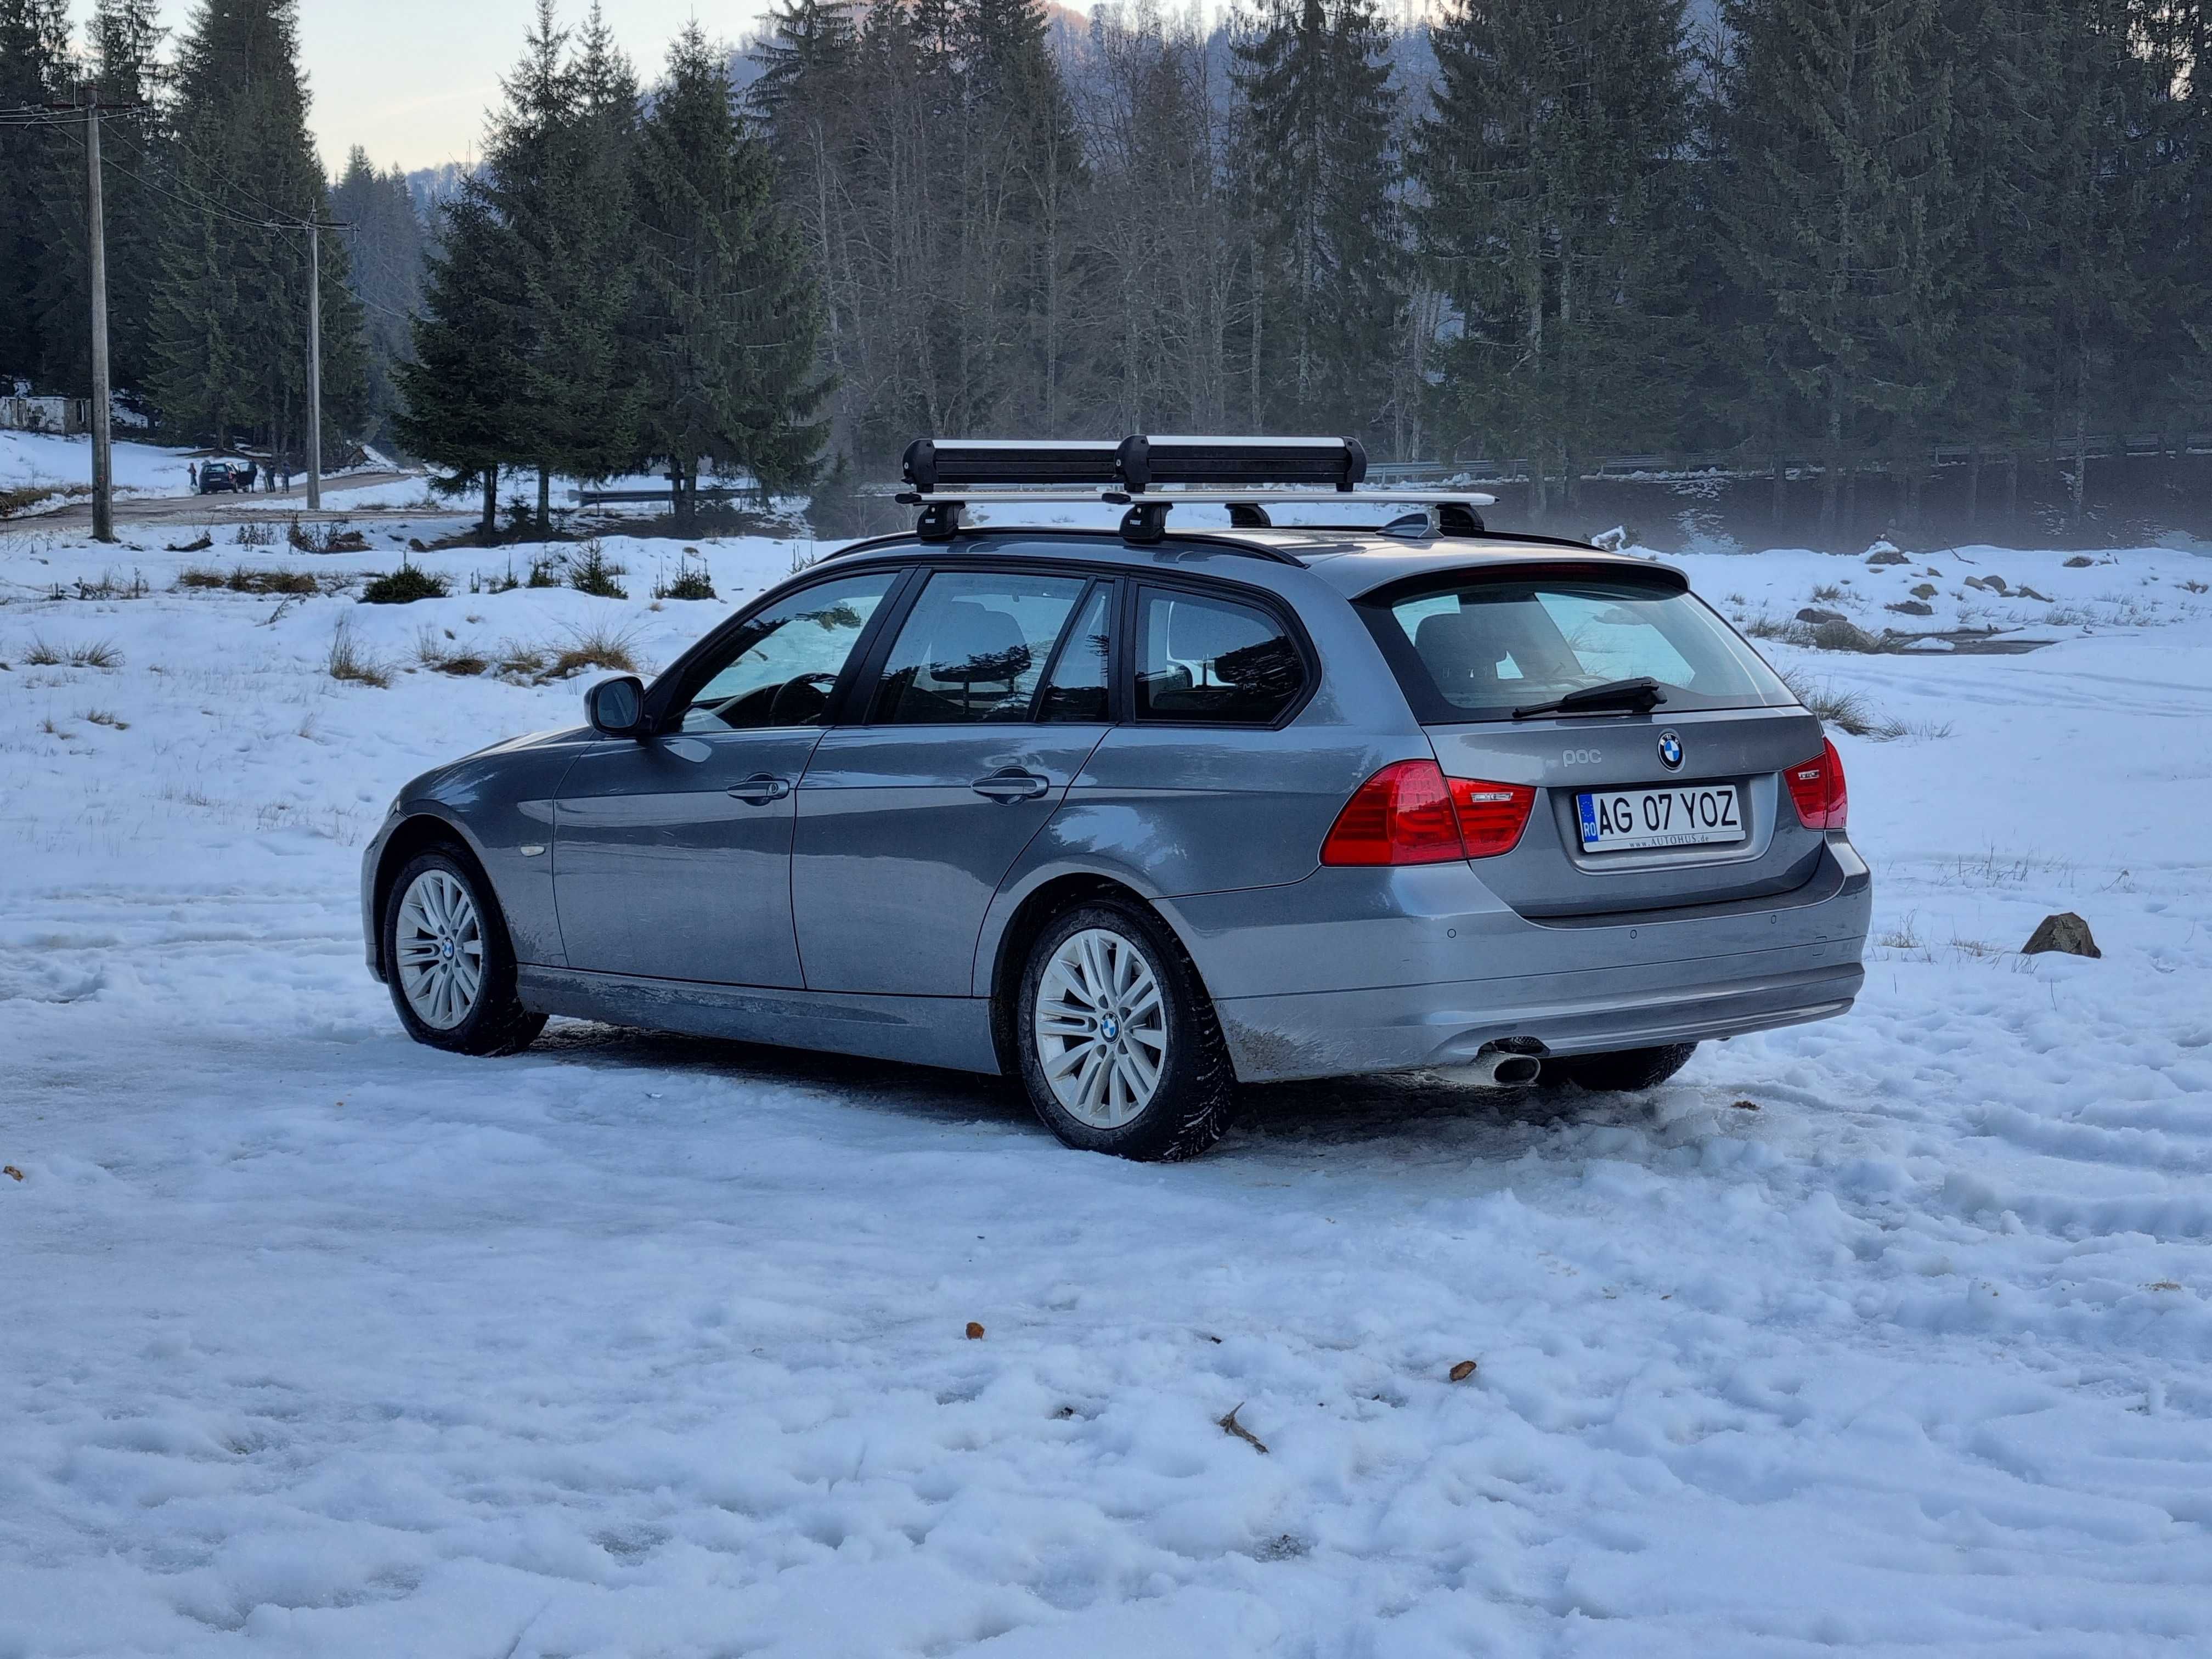 BMW 320xd - seria 3, E91 LCI 2011, 184CP, xDrive